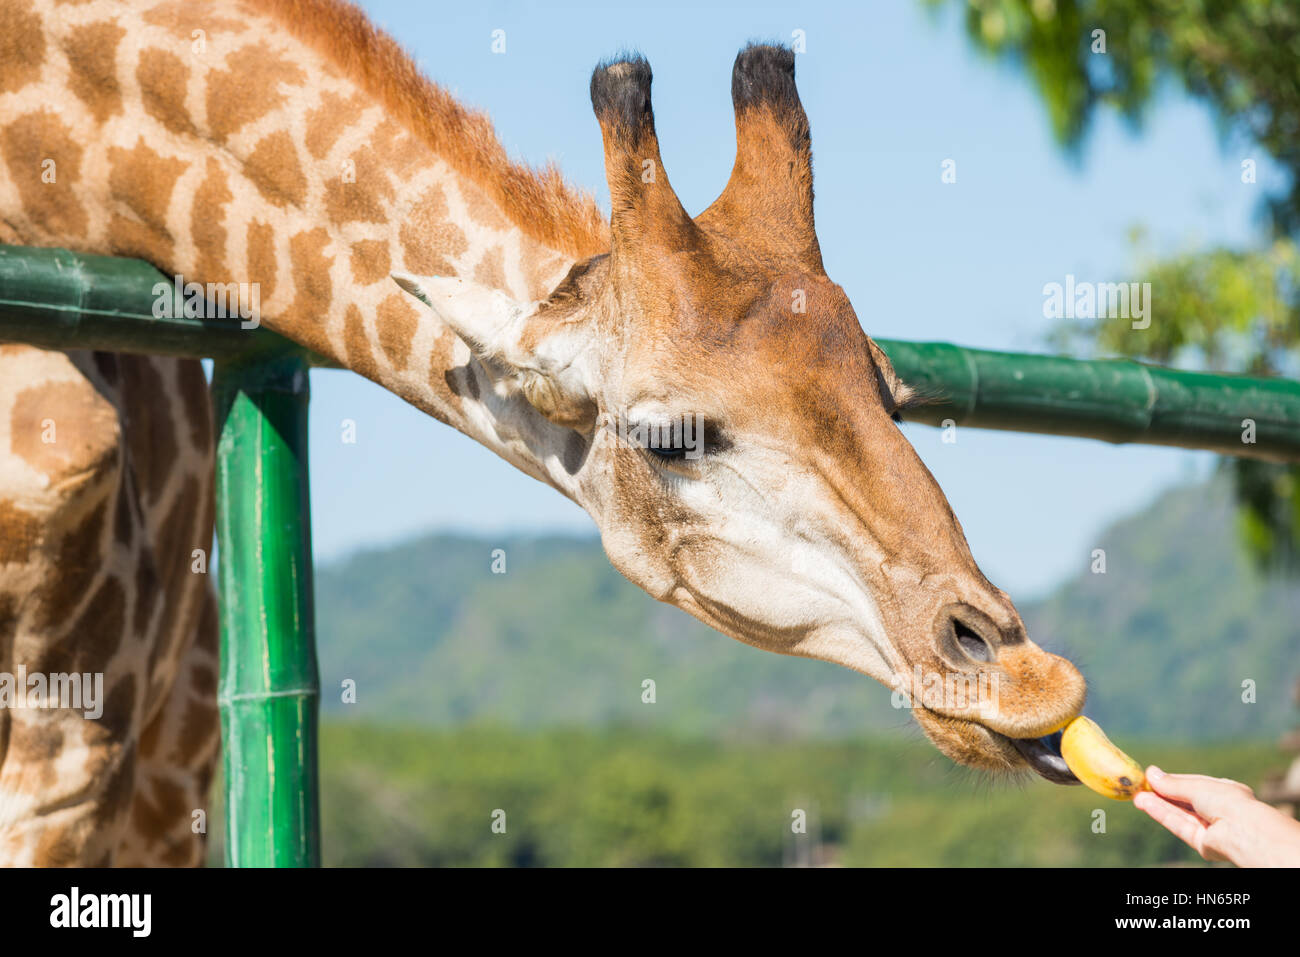 Fütterung der Tiere, Essen Giraffen Bananen. Stockfoto